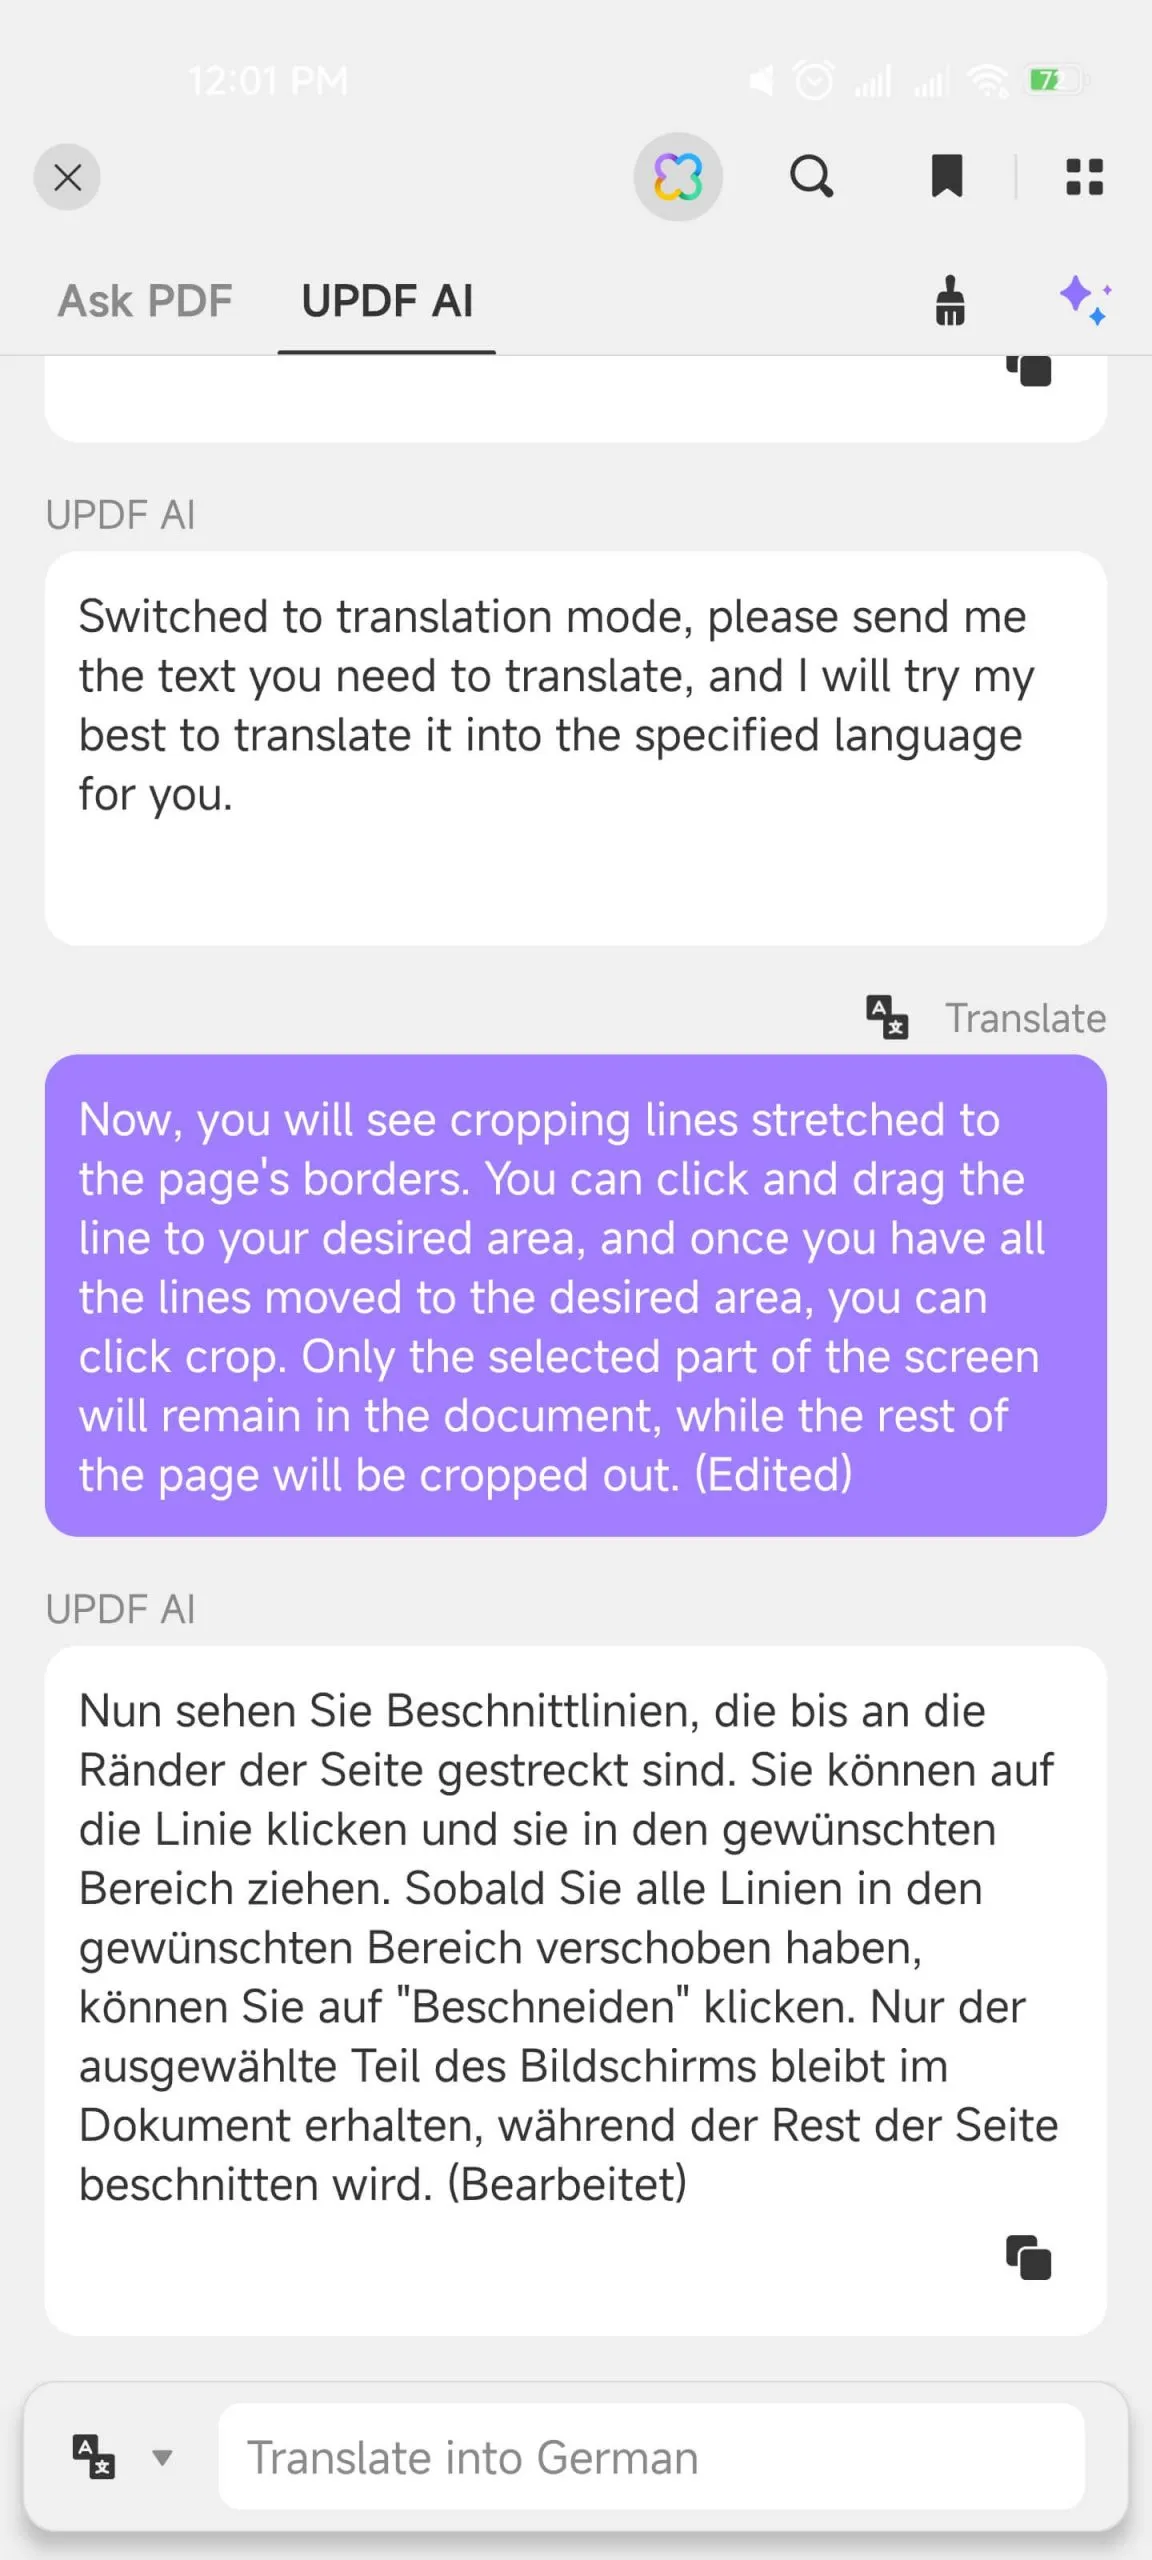 ترجمة باستخدام دردشة UPDF AI